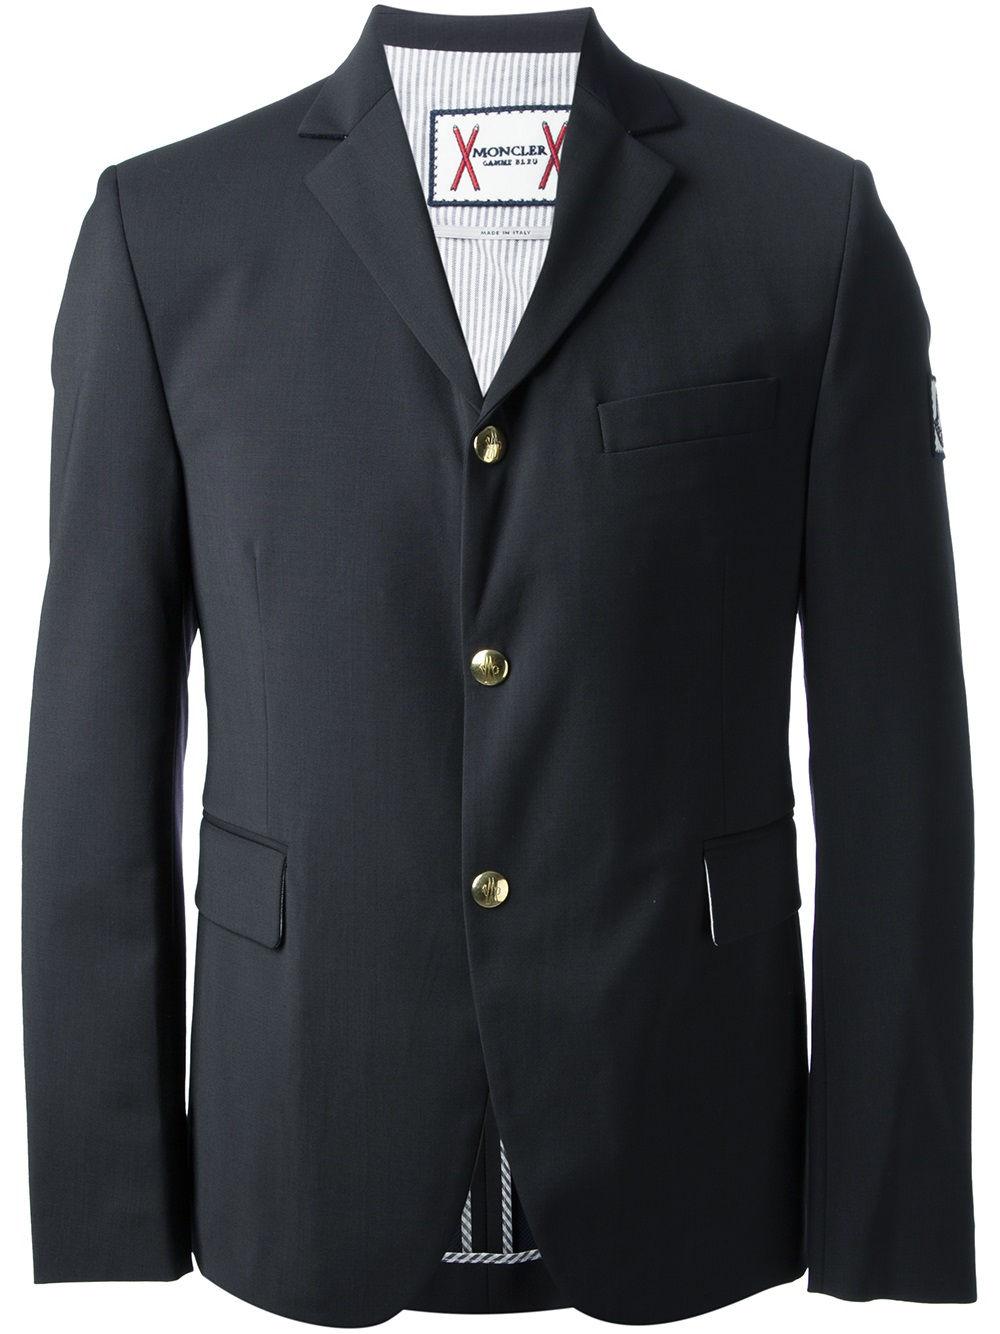 Moncler Gamme Bleu Suit Jacket in Blue for Men - Lyst